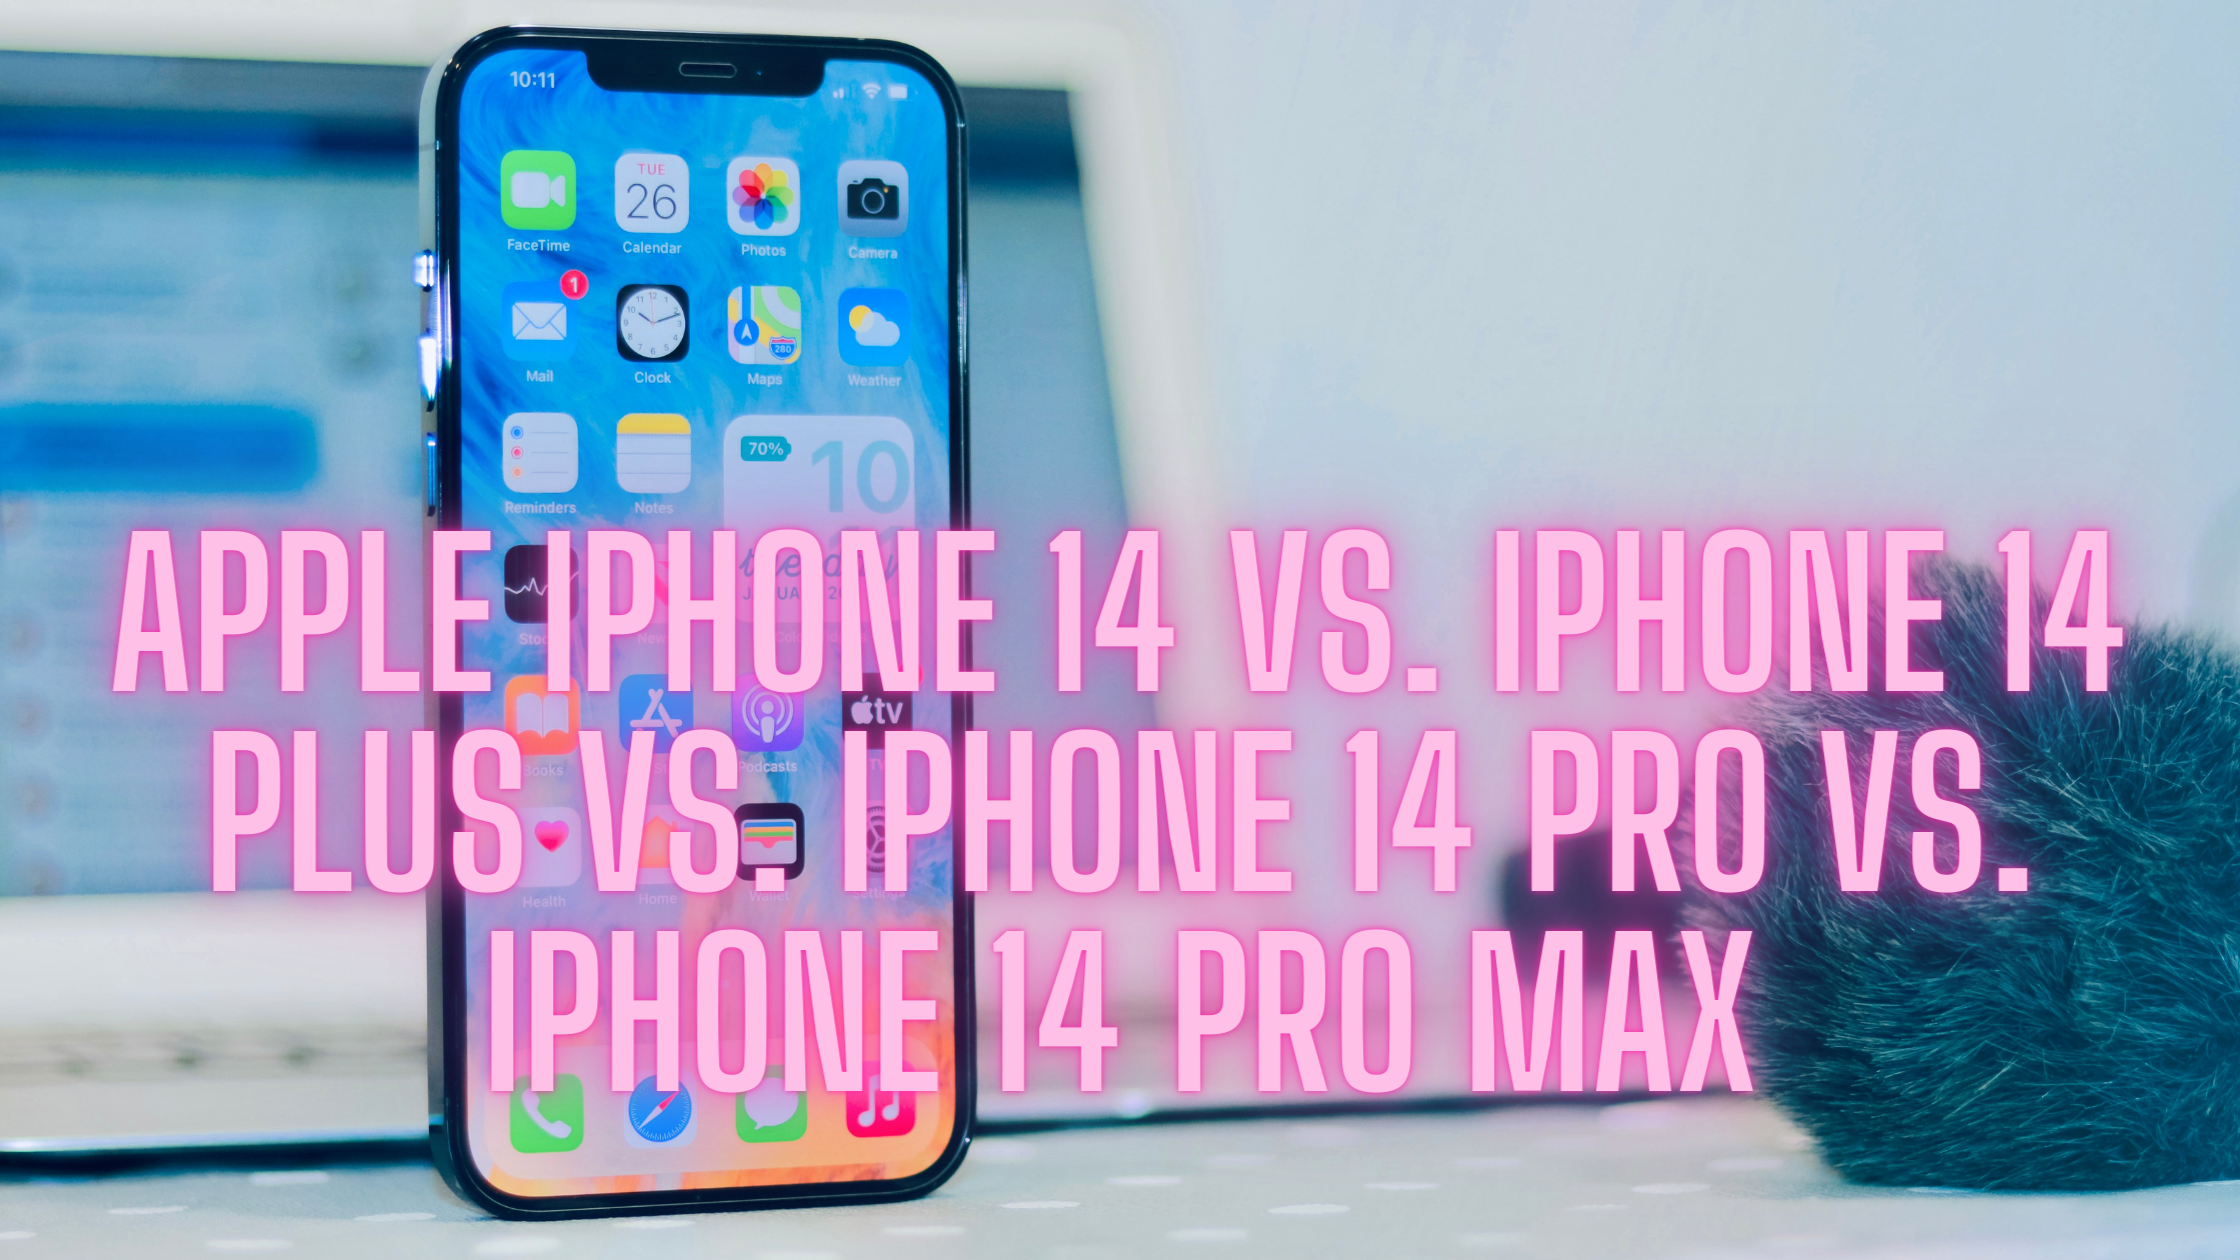 Apple iPhone 14 vs. iPhone 14 Plus vs. iPhone 14 Pro vs. iPhone 14 Pro Max